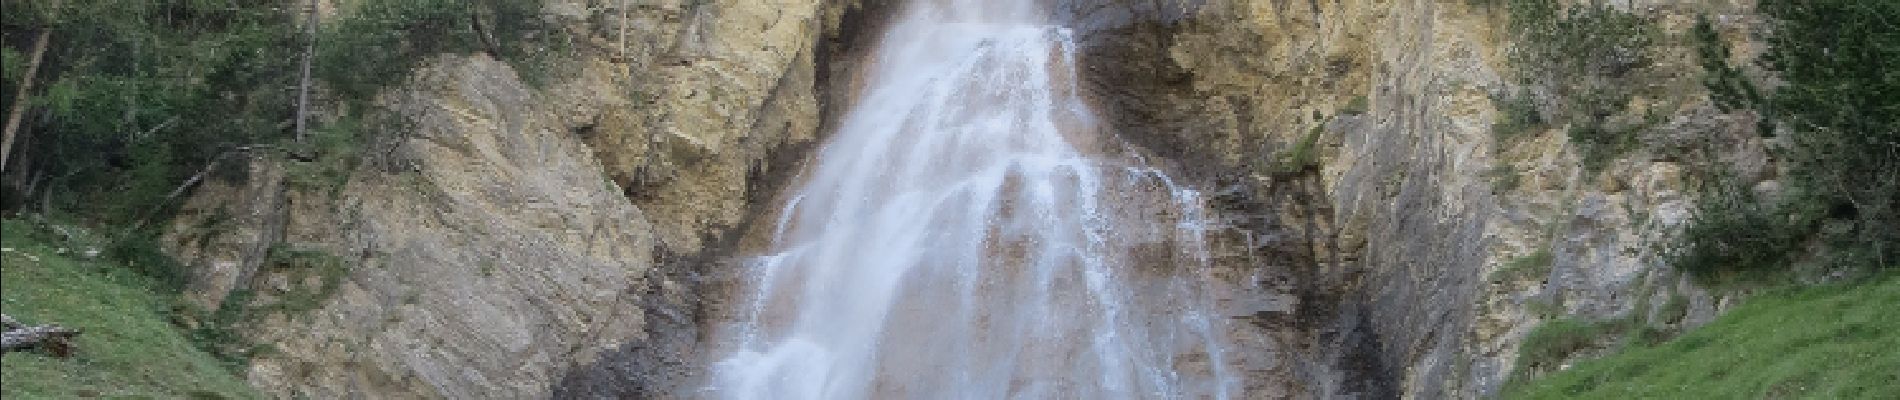 POI Ceillac - la cascade de la Pisse - Photo